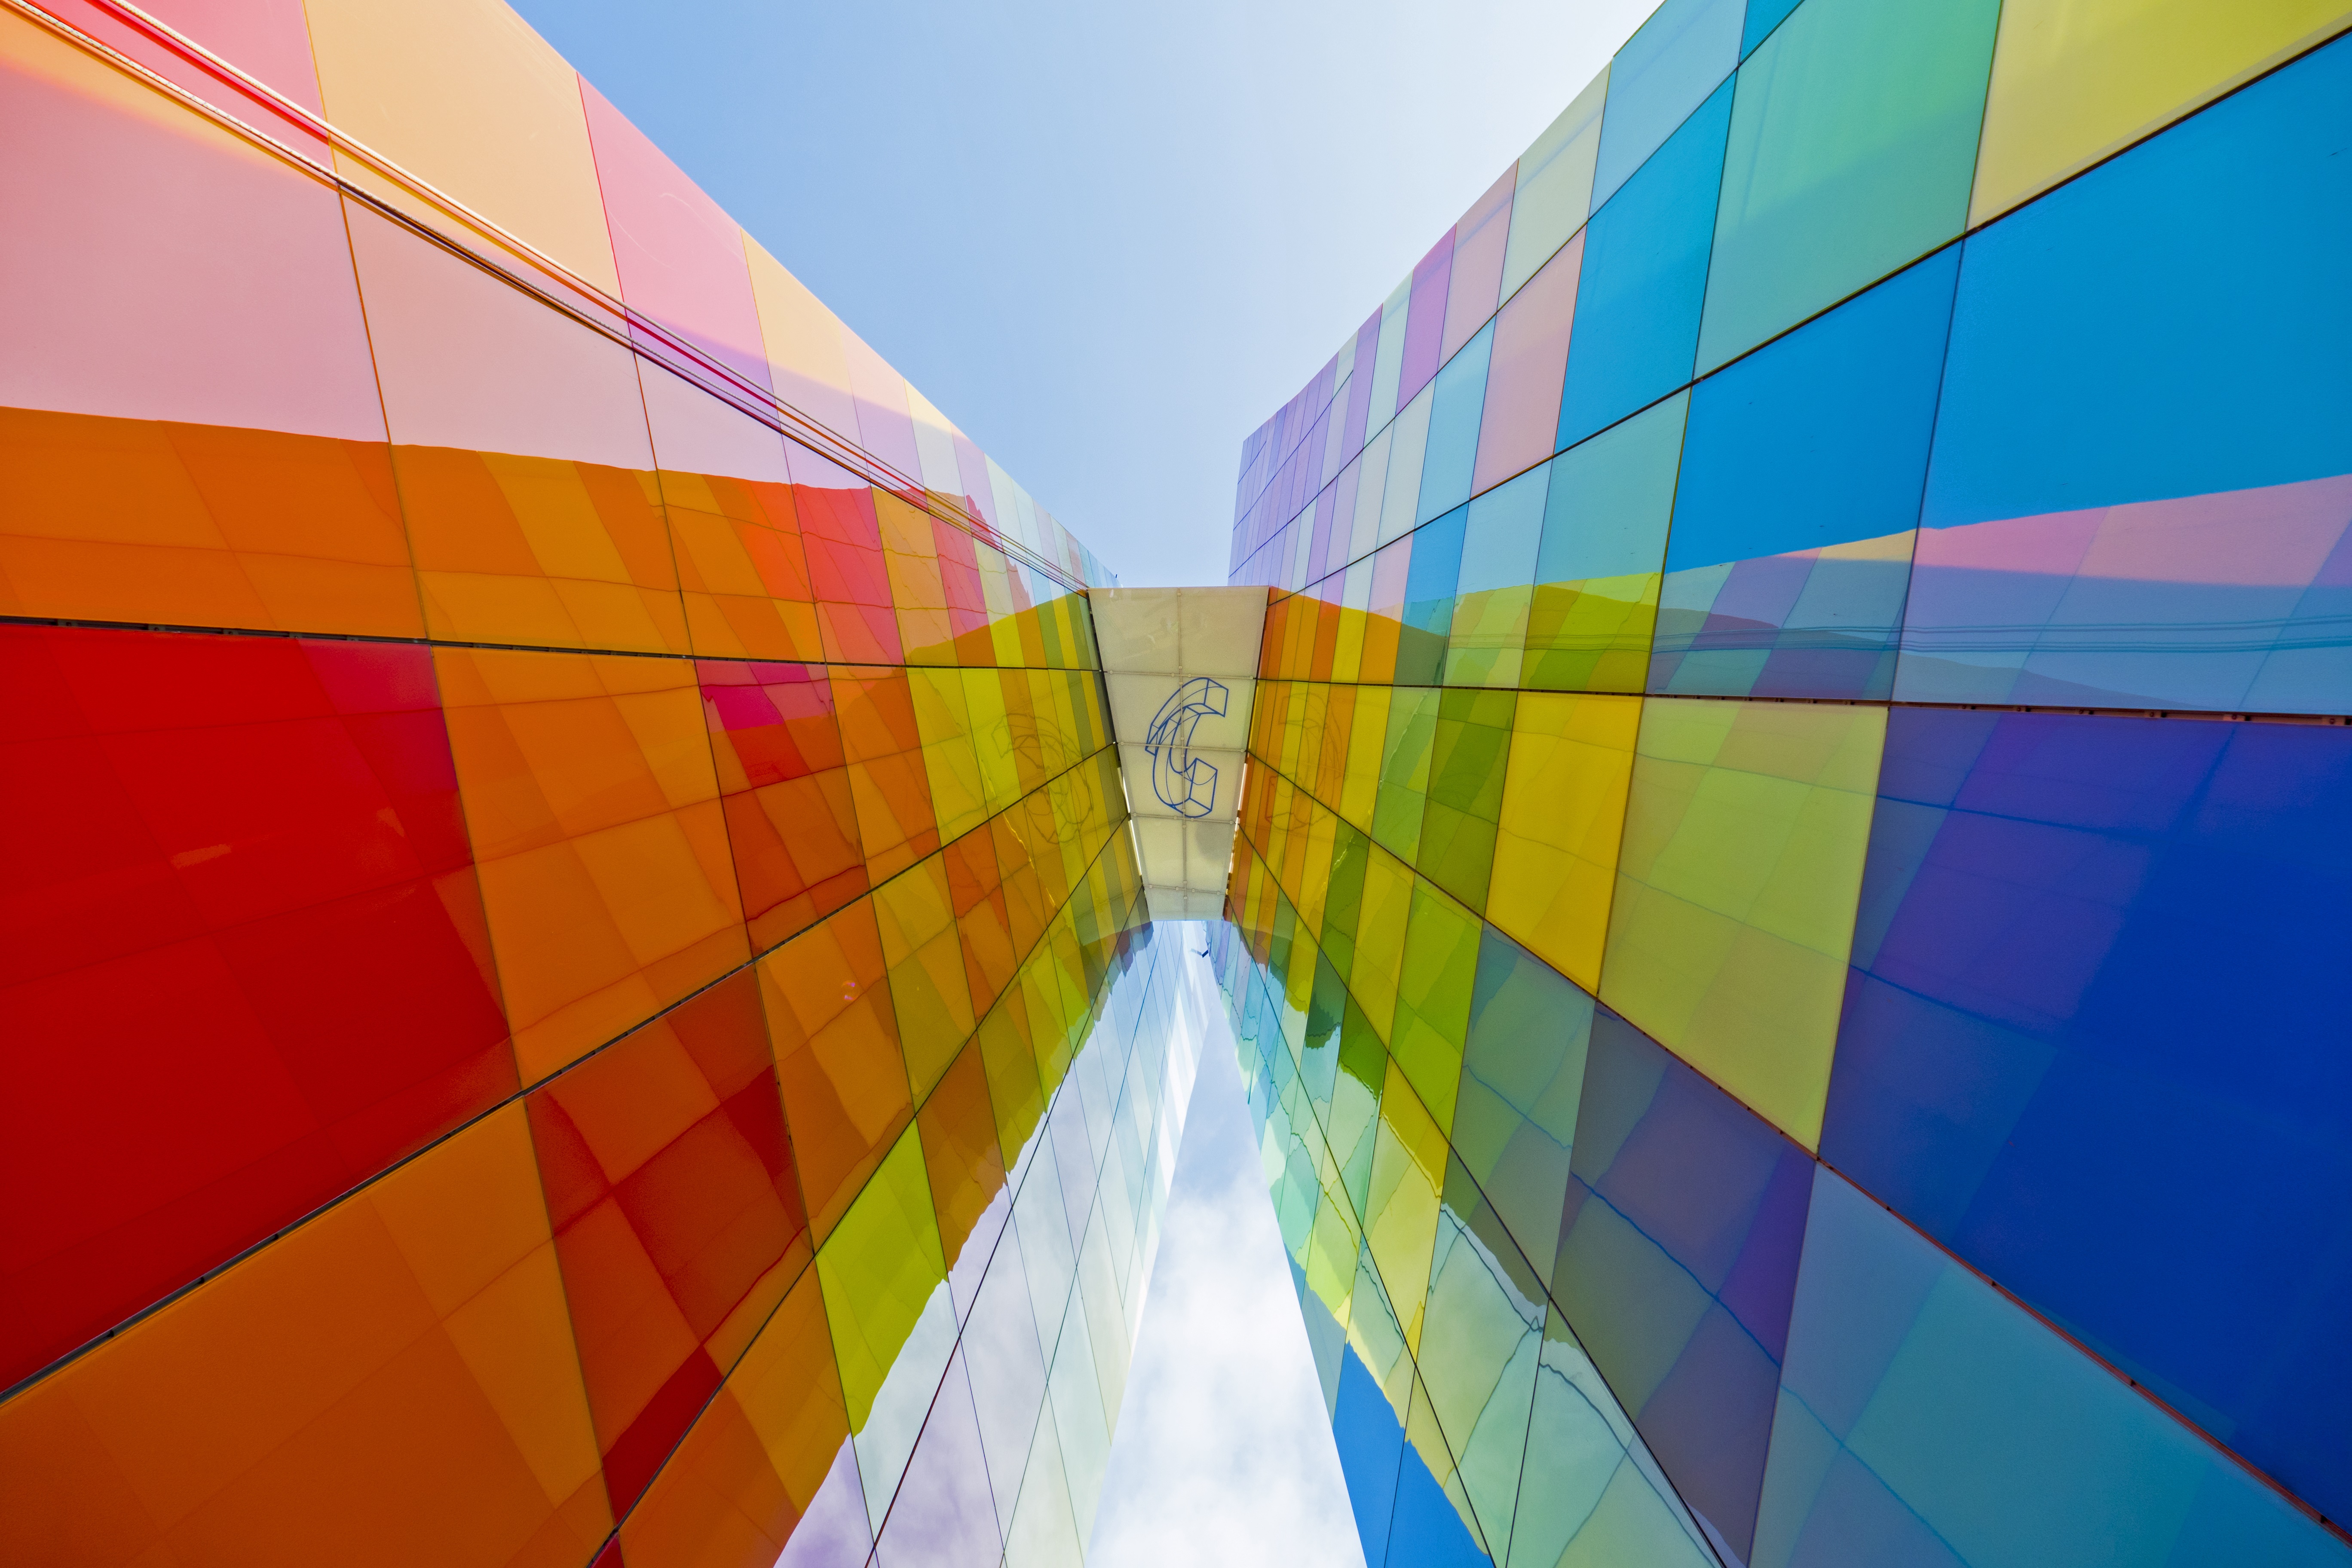 La Ventana al Mundo with multi-colored glass exterior